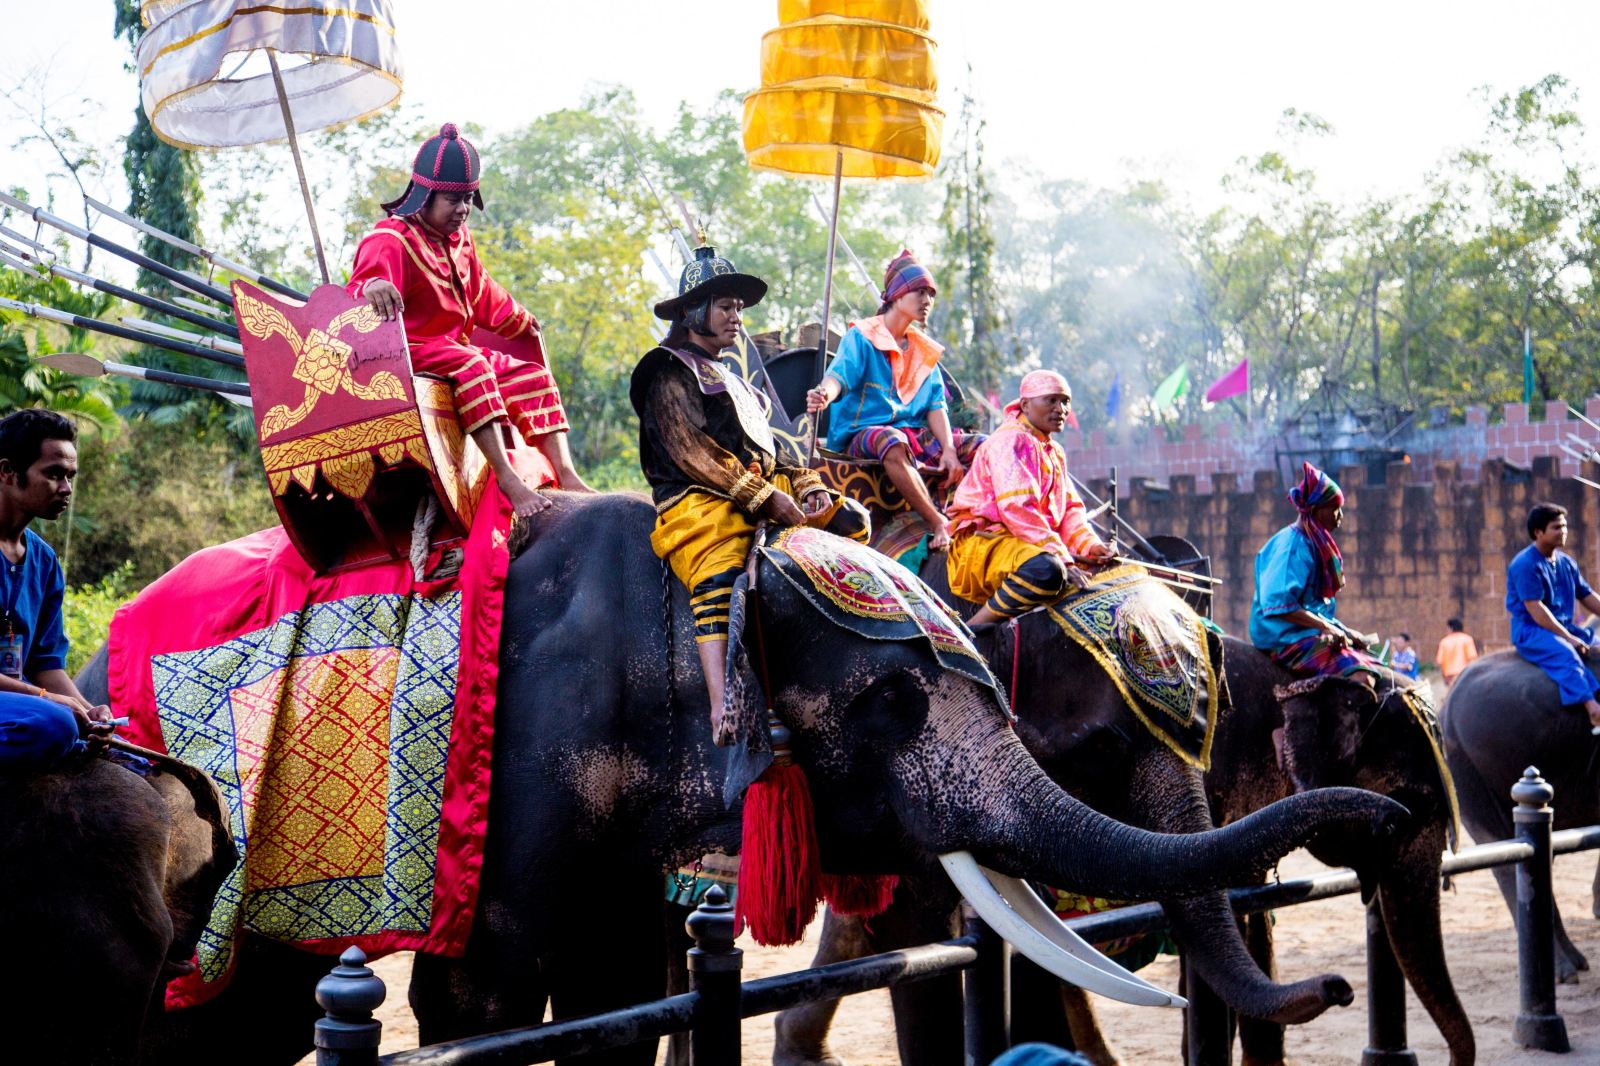 泰国曼谷 三攀象乐园 ลานแสดงช้างและฟาร์มจระเข้สามพราน